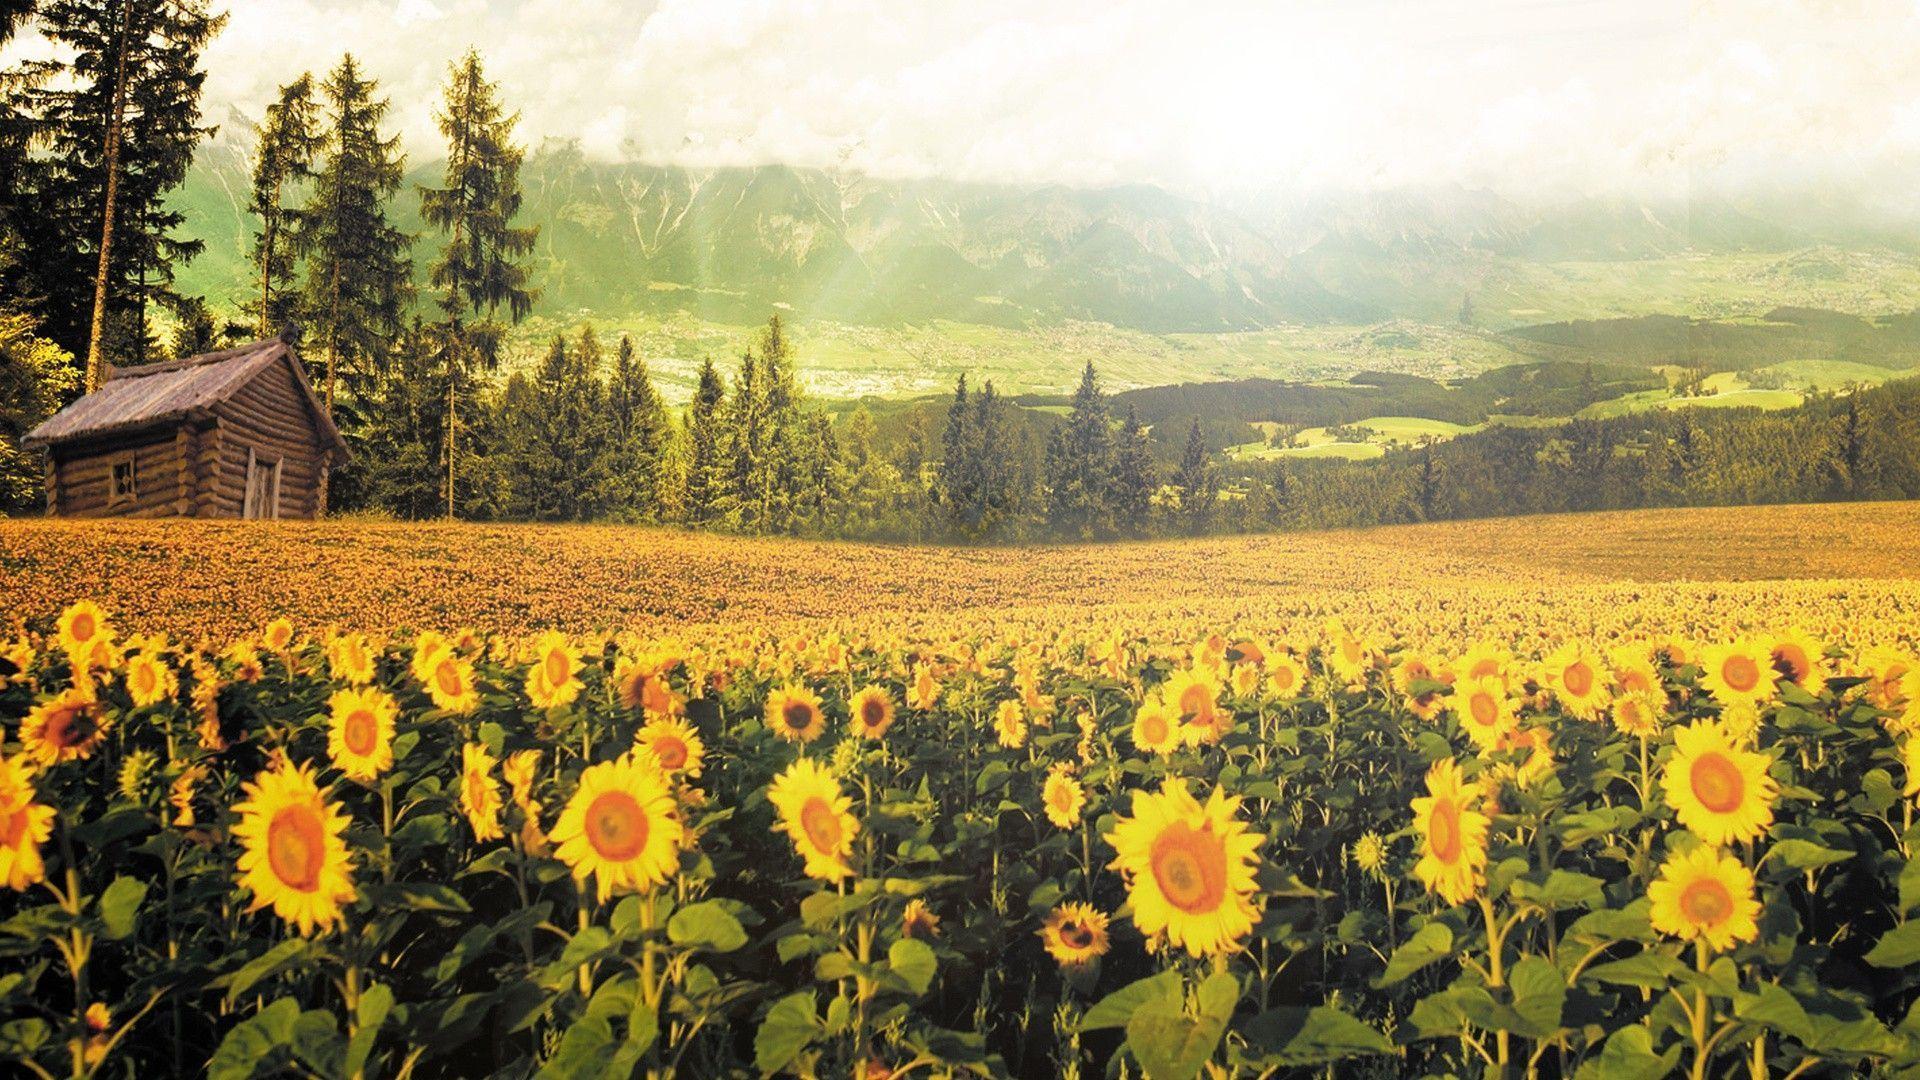 Sunflowers Wallpapers là tuyệt vời cho những ai yêu thích hoa hướng dương và muốn có một hình nền độc đáo cho thiết bị của mình. Hình ảnh này sẽ mang lại cho bạn cảm giác dịu nhẹ, ấm áp và vô cùng thoải mái.